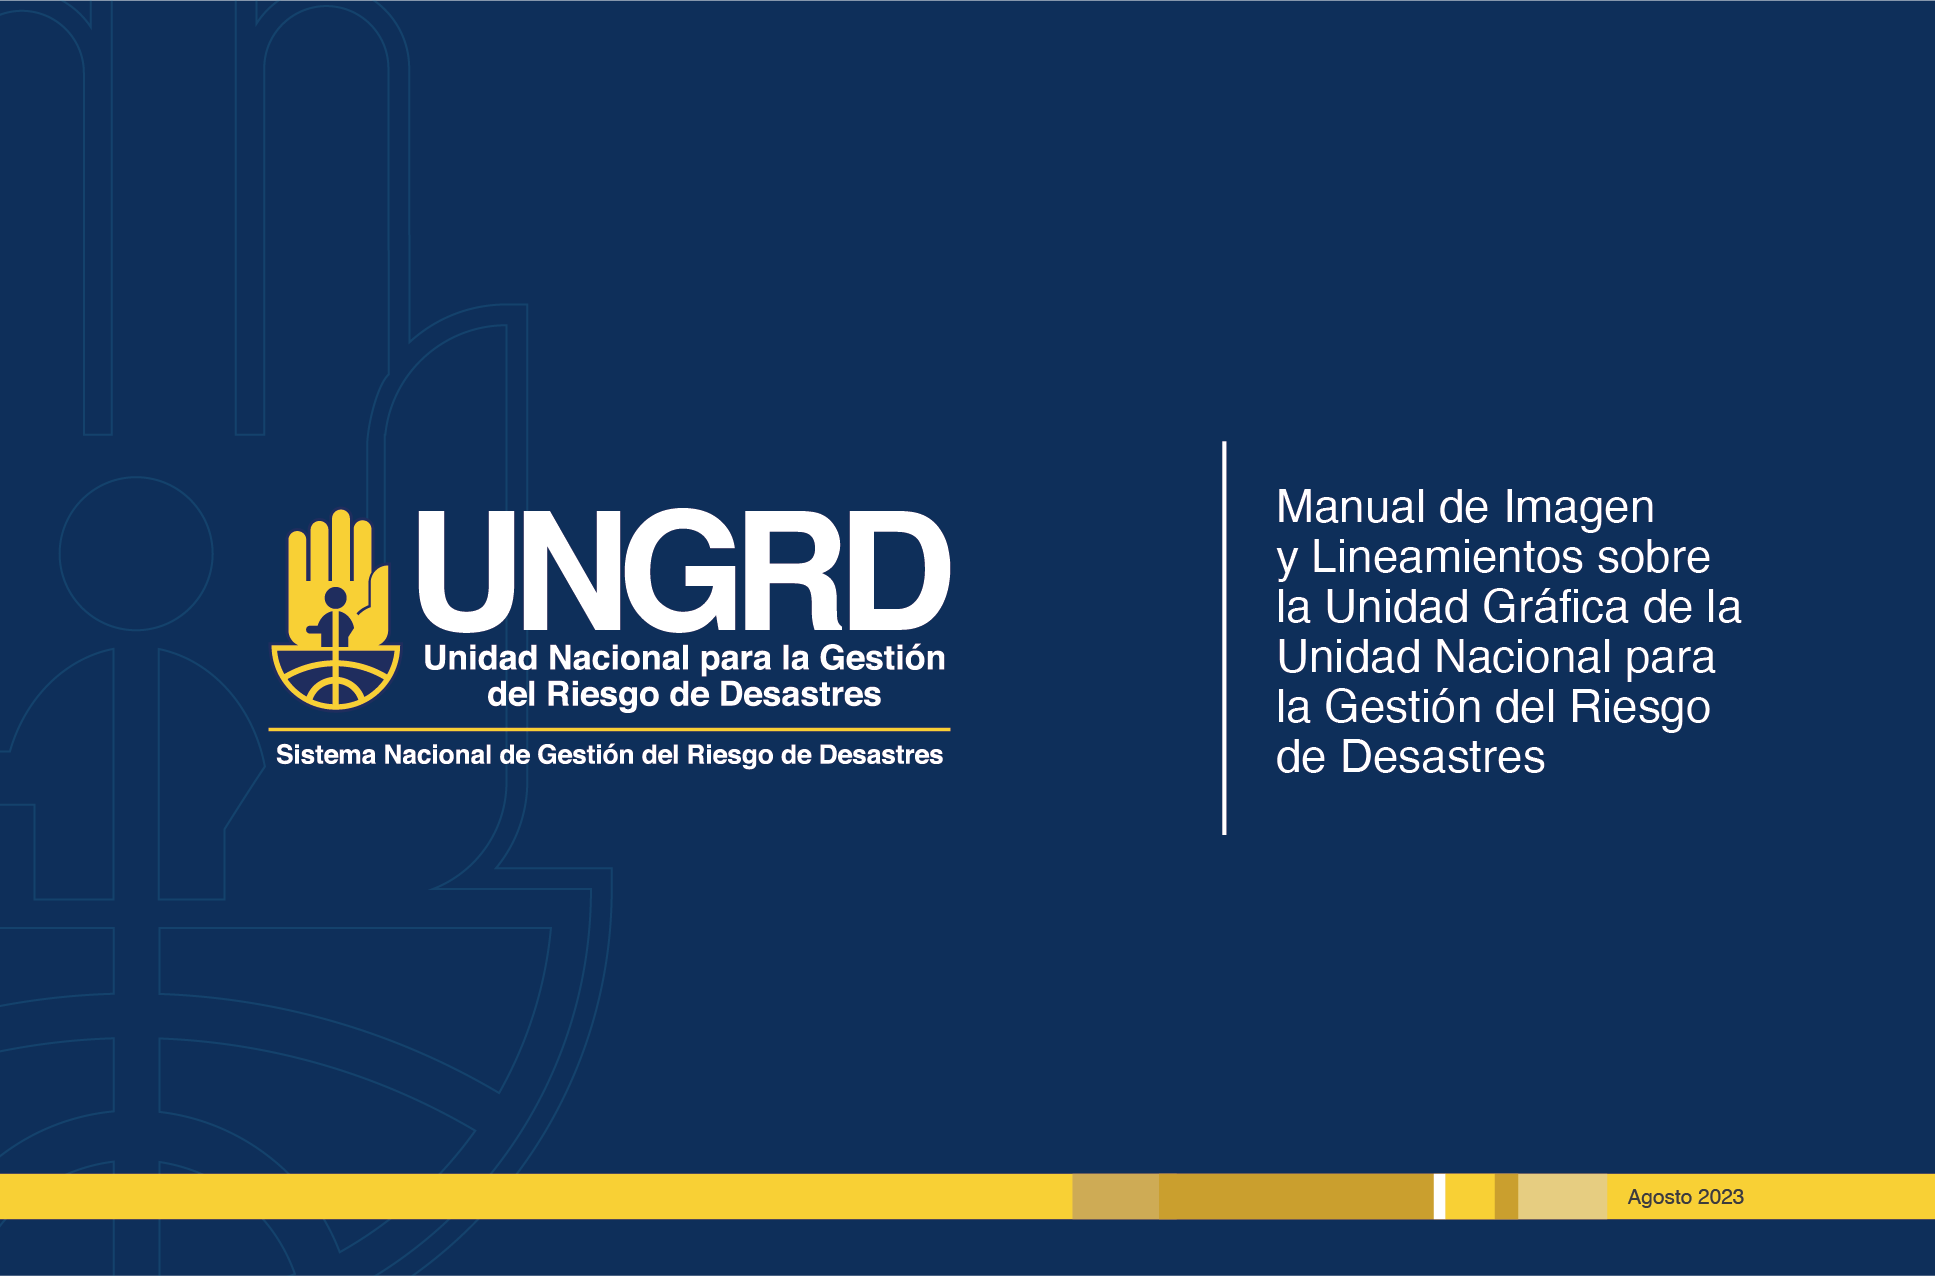 Manual de Imagen y Lineamientos sobre la Unidad Gráfica de la Unidad Nacional para la Gestión del Riesgo de Desastres